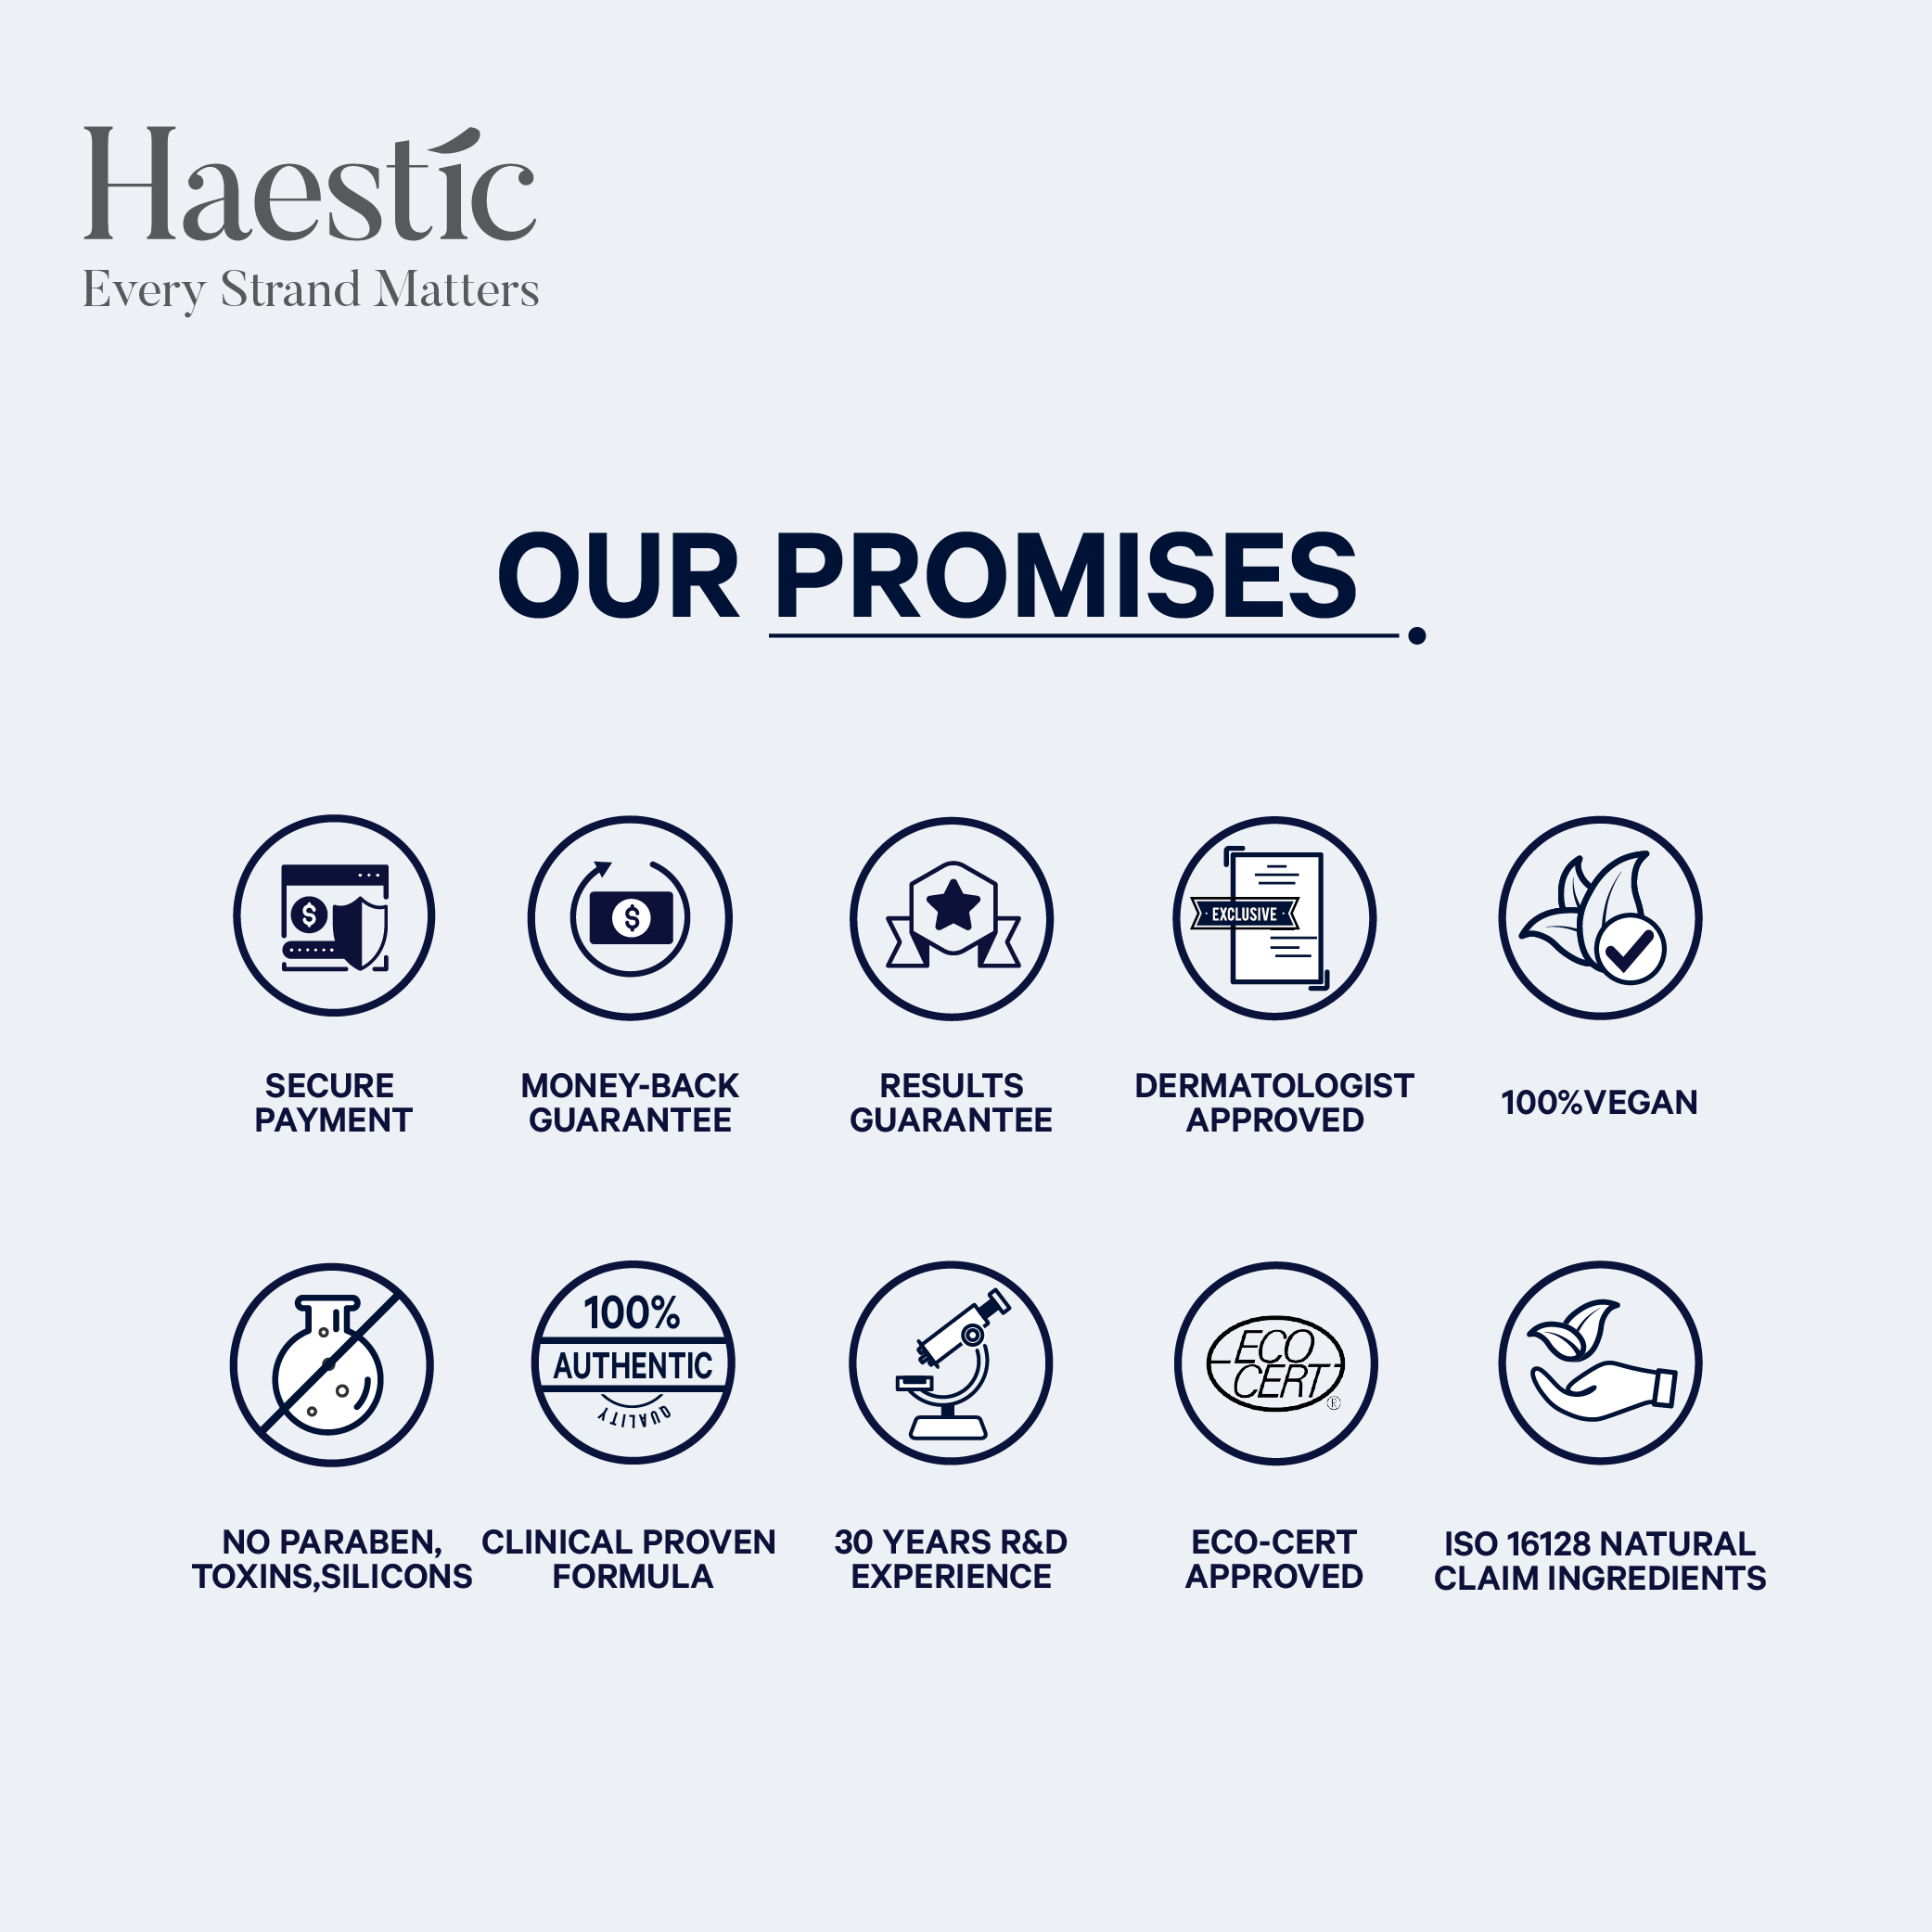 Haestic Promises